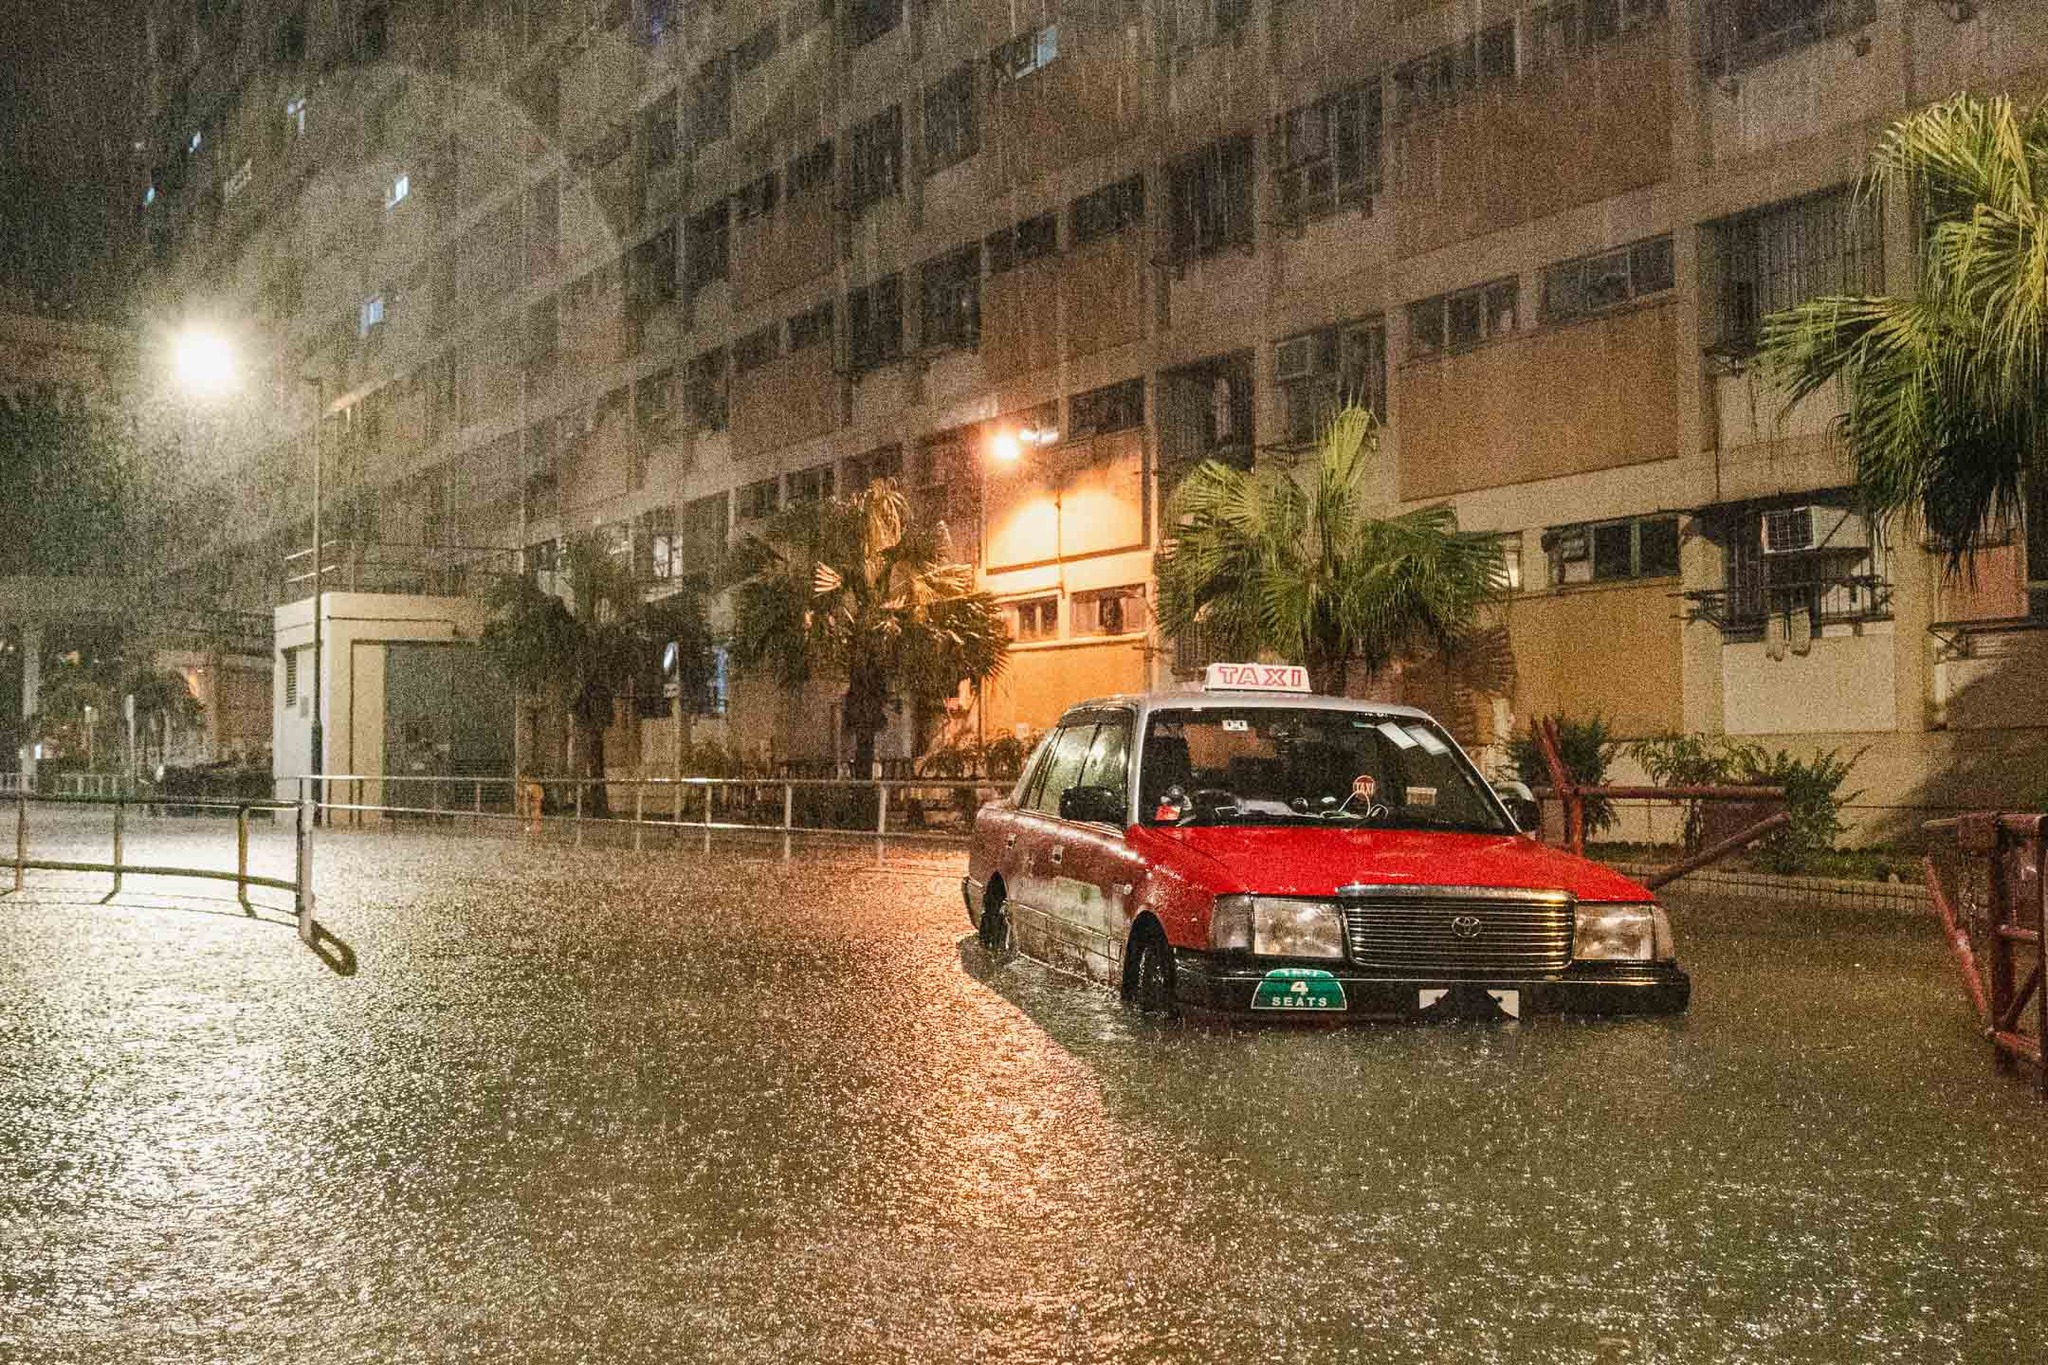 暴雨襲港 市民冒雨出行 - 香港文匯網